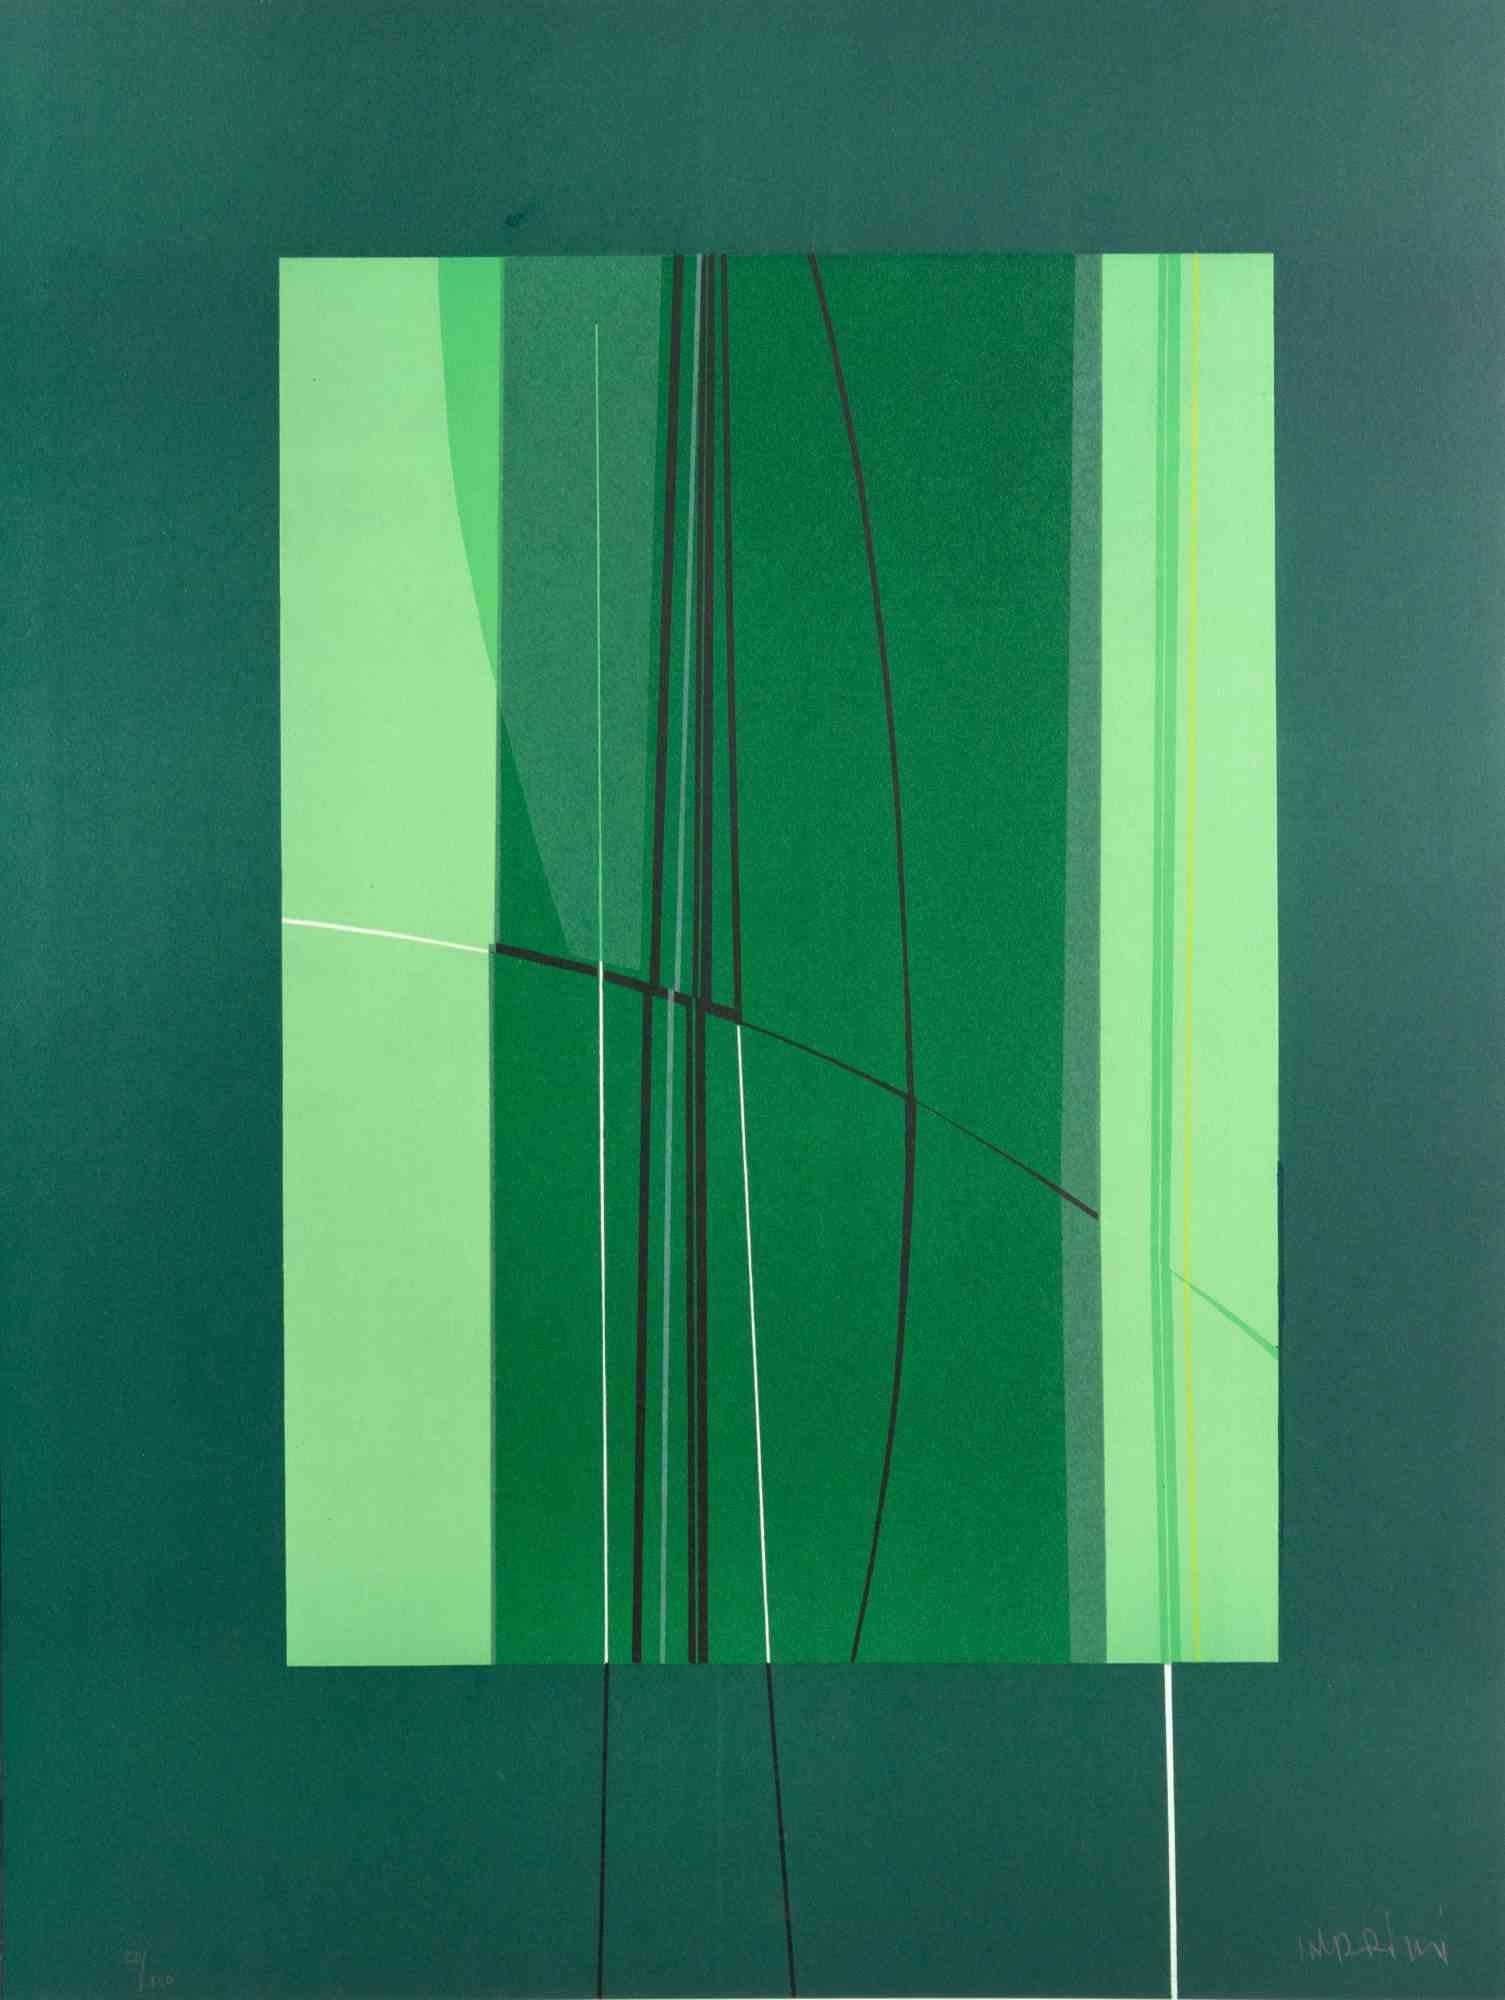 Green ist ein zeitgenössisches Kunstwerk von Lorenzo Indrimi aus den 1970er Jahren.

Gemischtfarbige Lithographie.

Am unteren Rand handsigniert und datiert.

Auflage von 92/150.